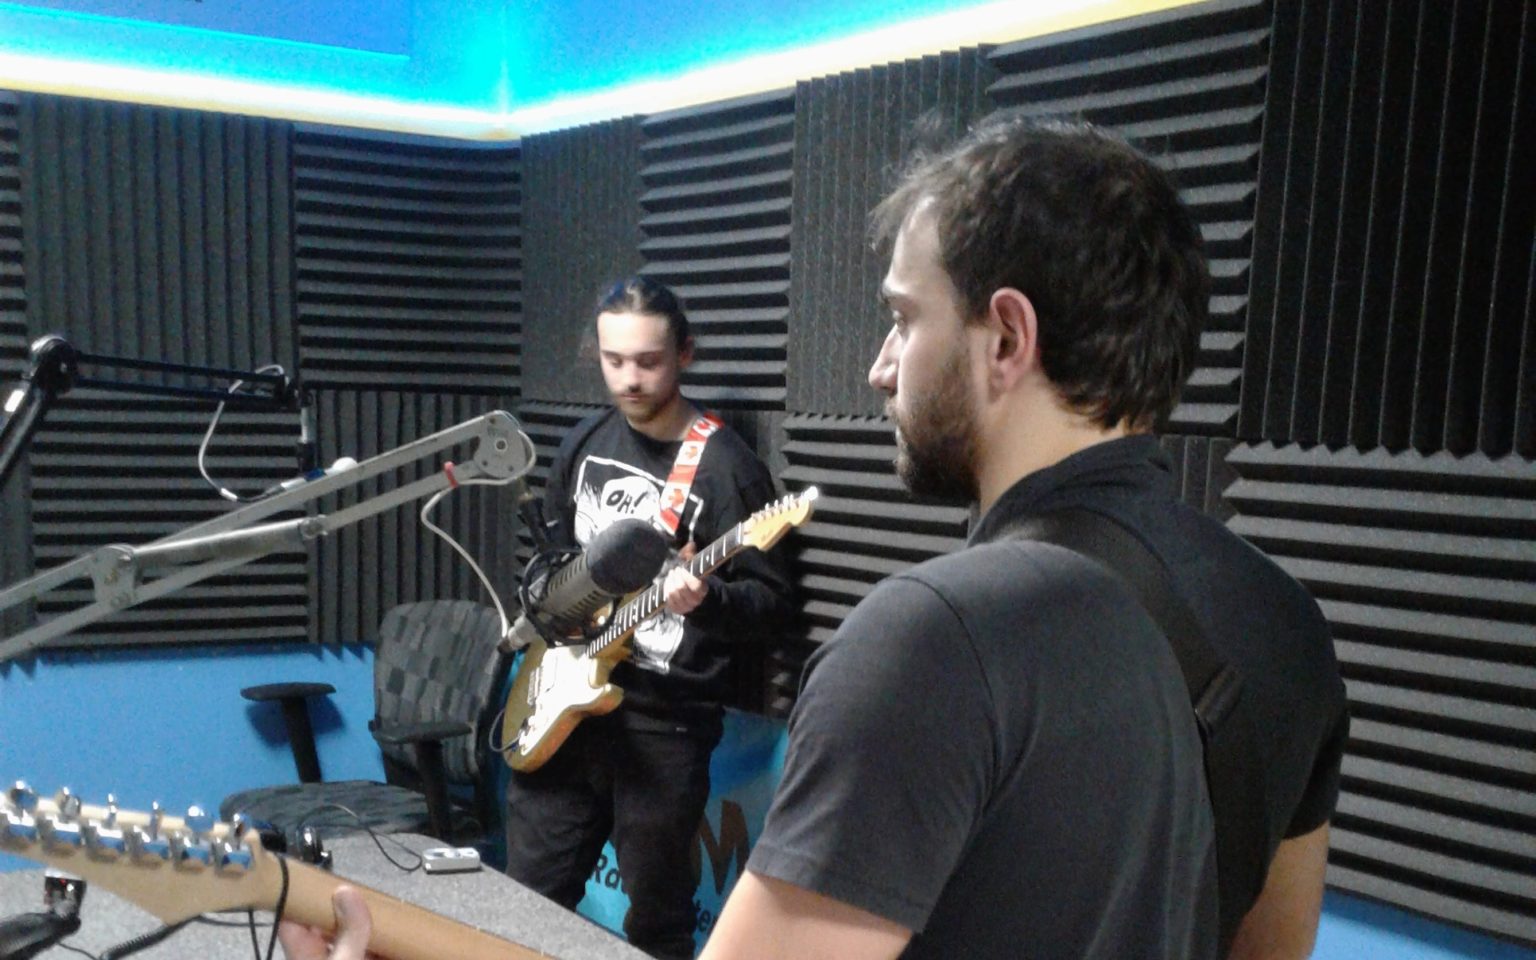 Diego Occhicone and Alessio Occhicone in the CKMS Studio